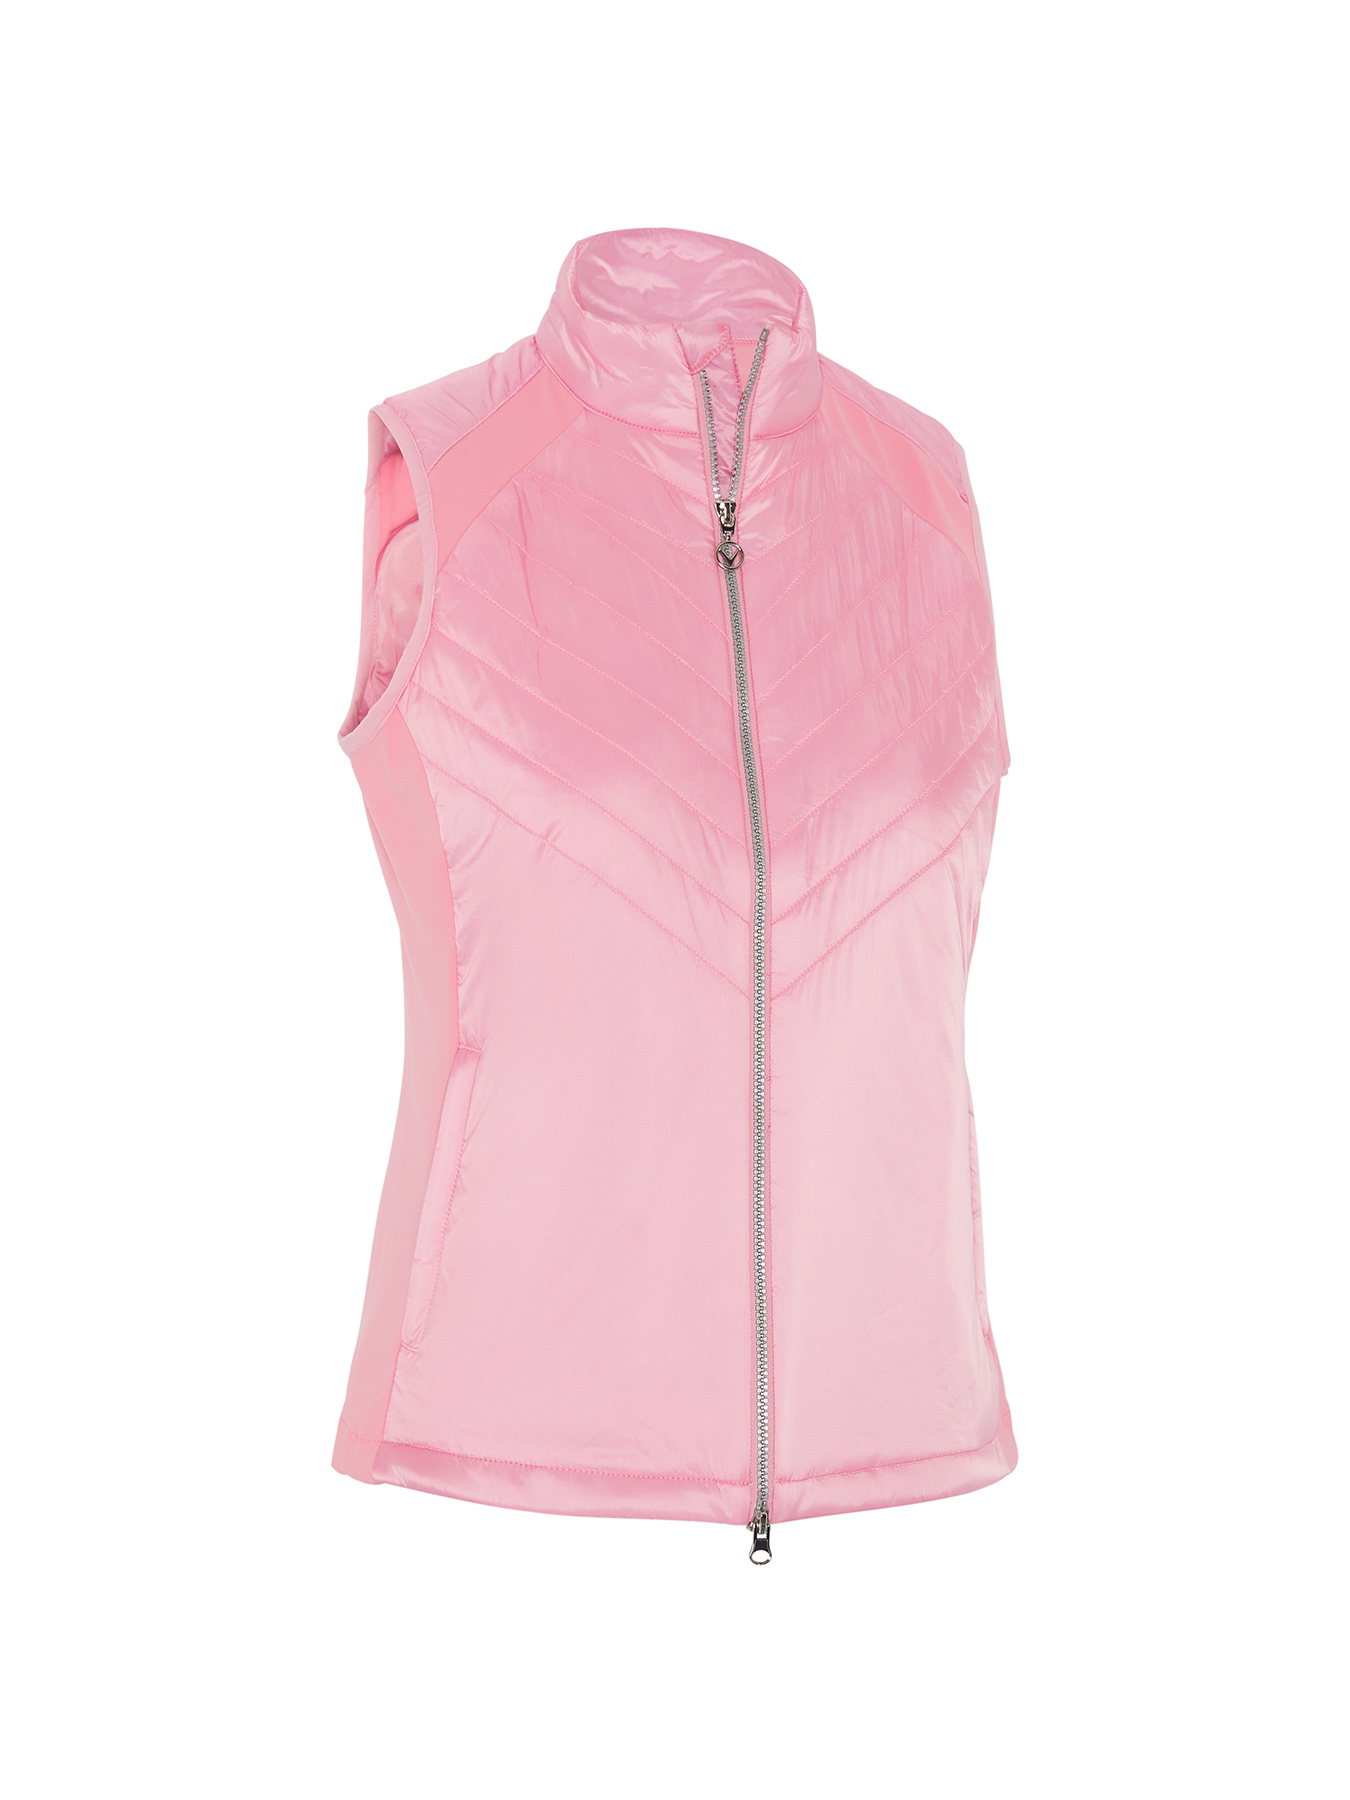 Callaway Chev Primaloft dámská golfová vesta, světle růžová, vel. L